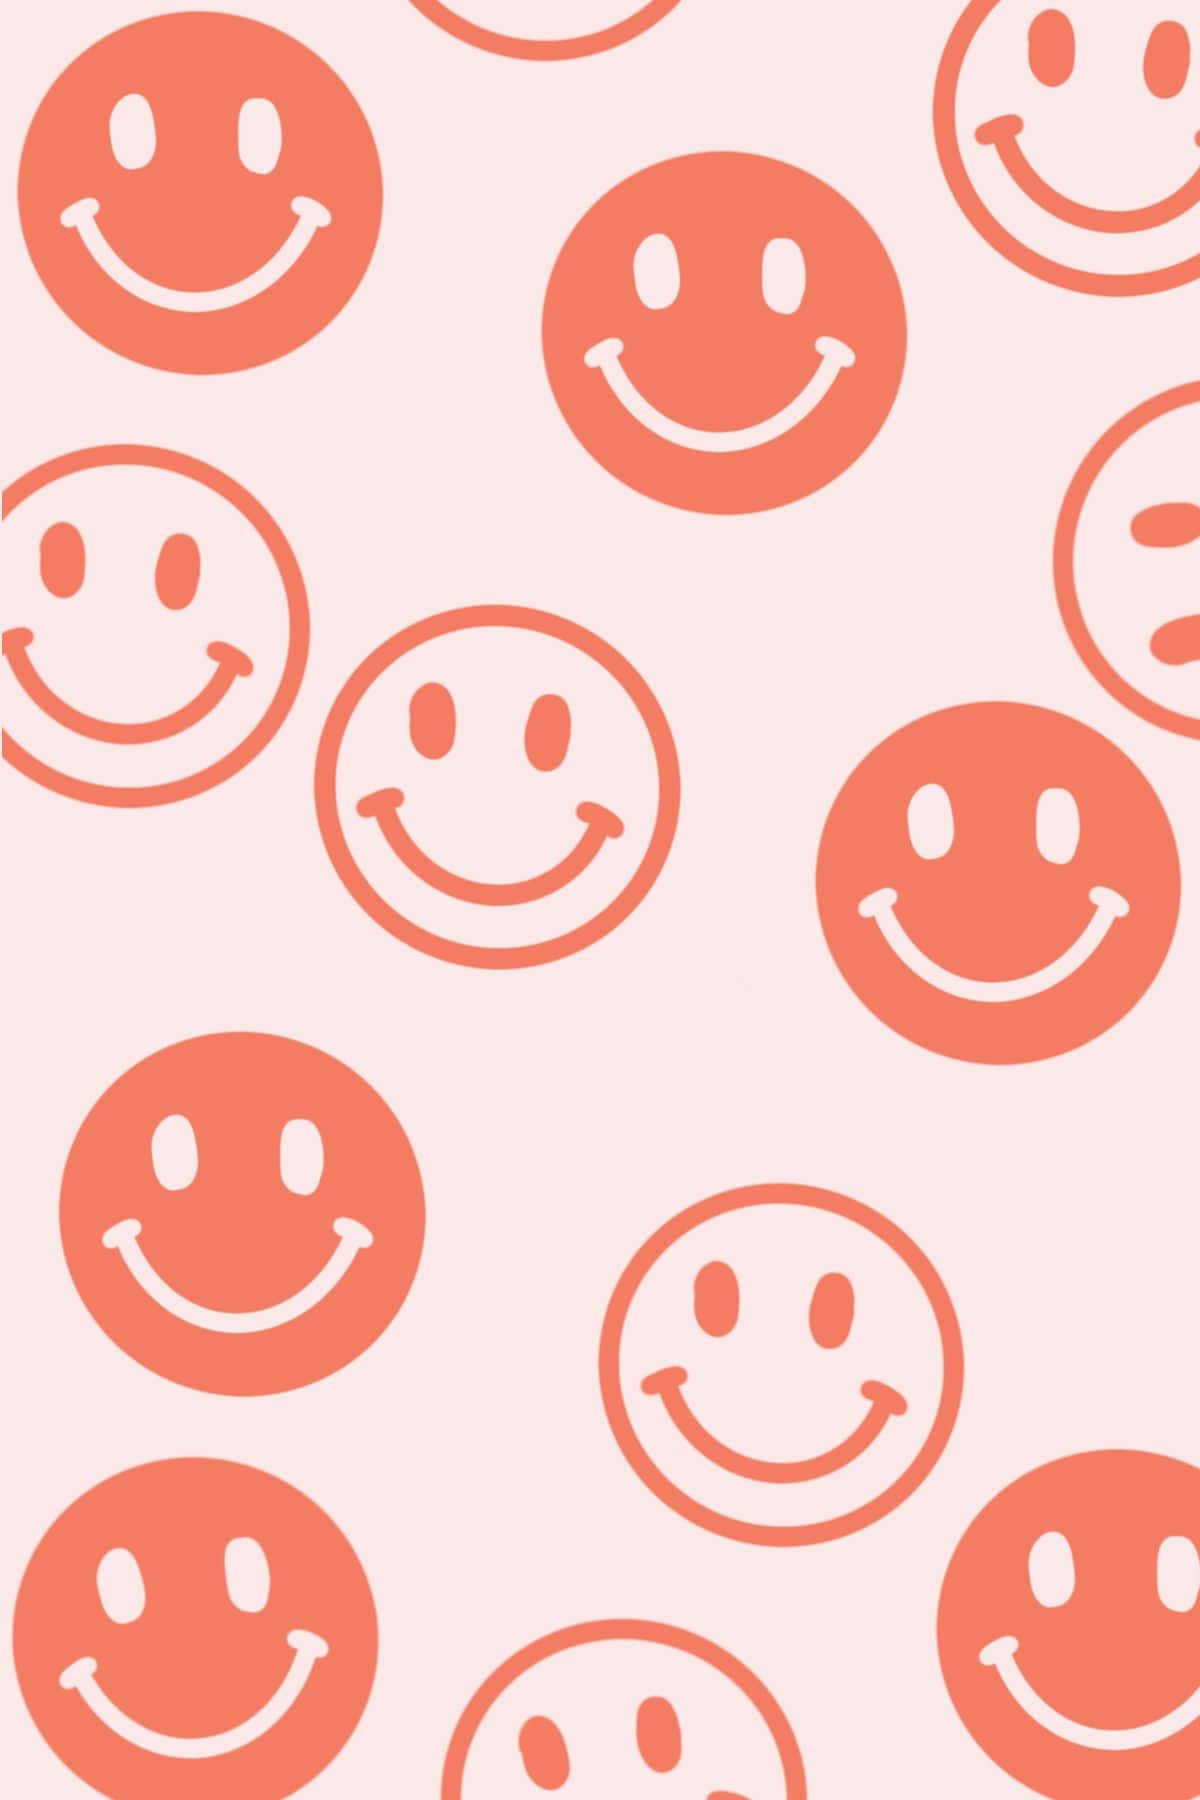 100 Happy Smile Wallpapers  Wallpaperscom